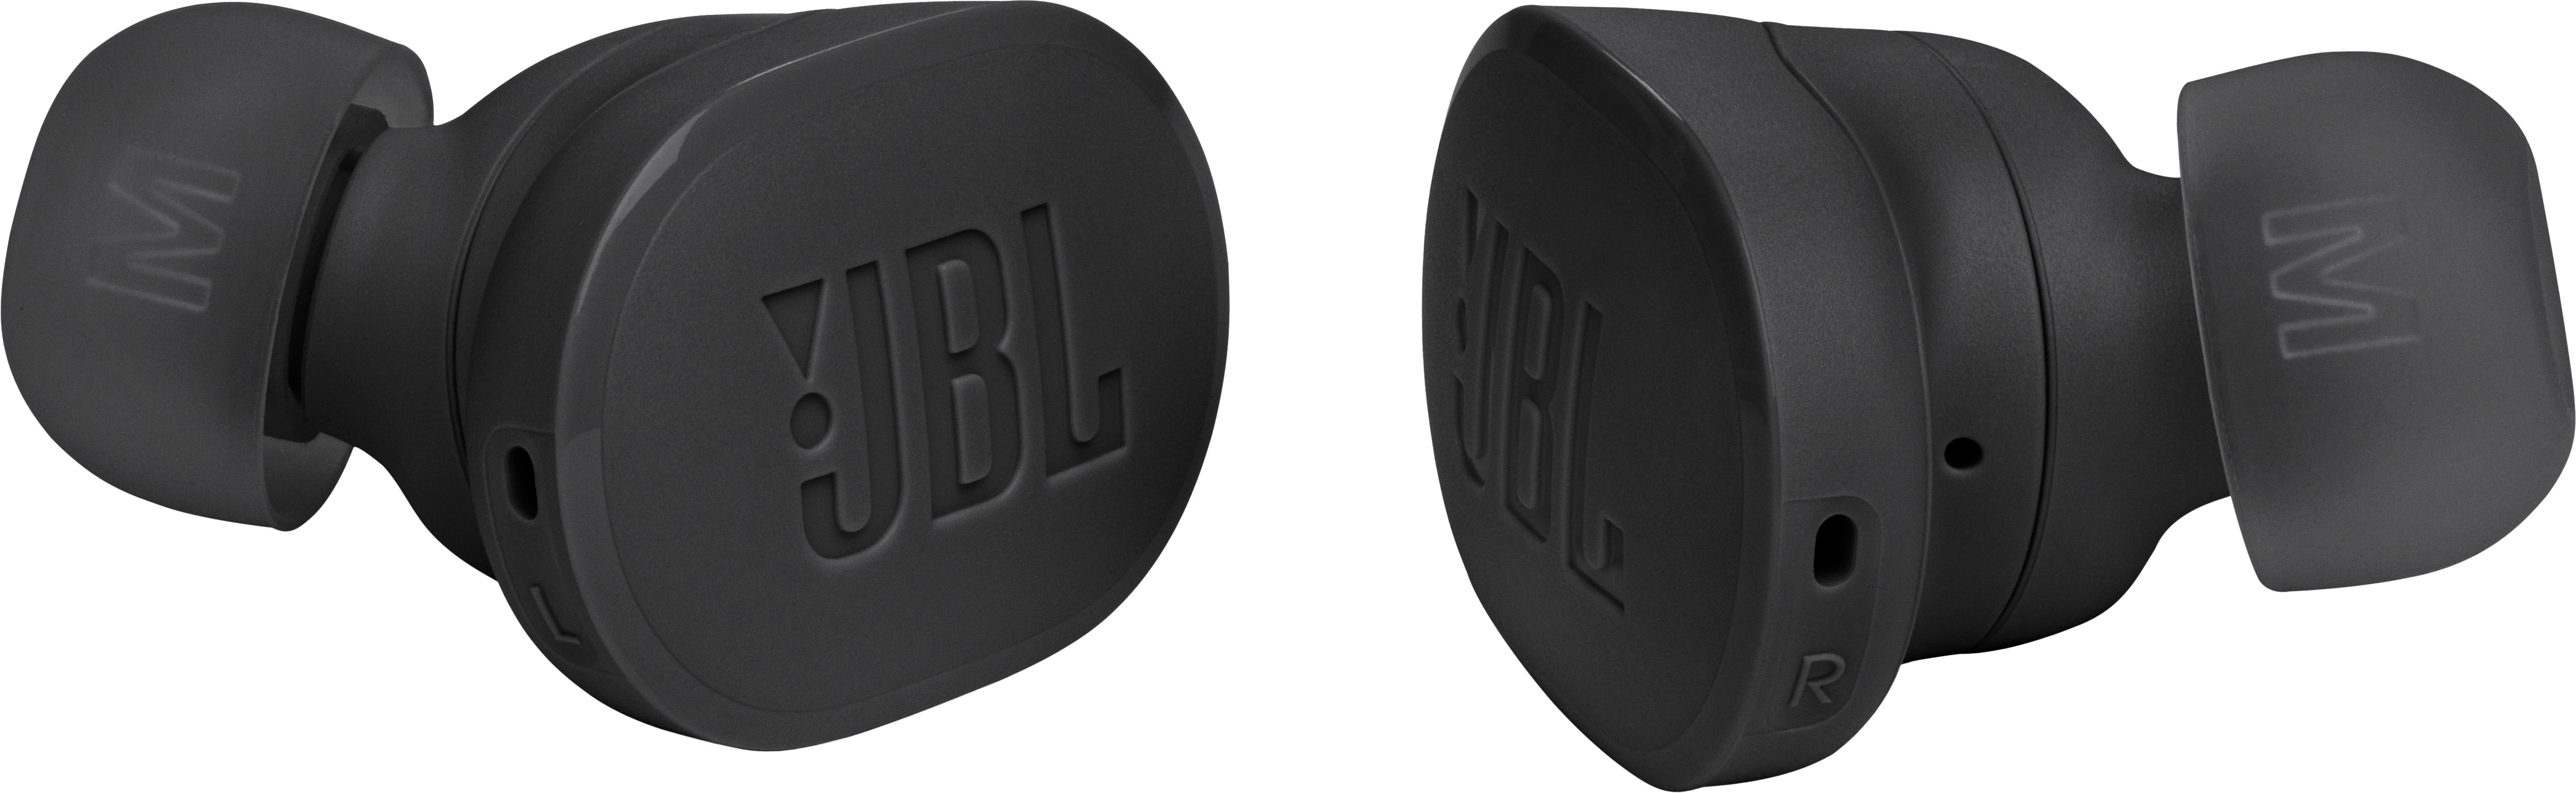 JBL Tune Buds True Wireless Noise Cancelling Earbuds Black JBLTBUDSBLKAM -  Best Buy